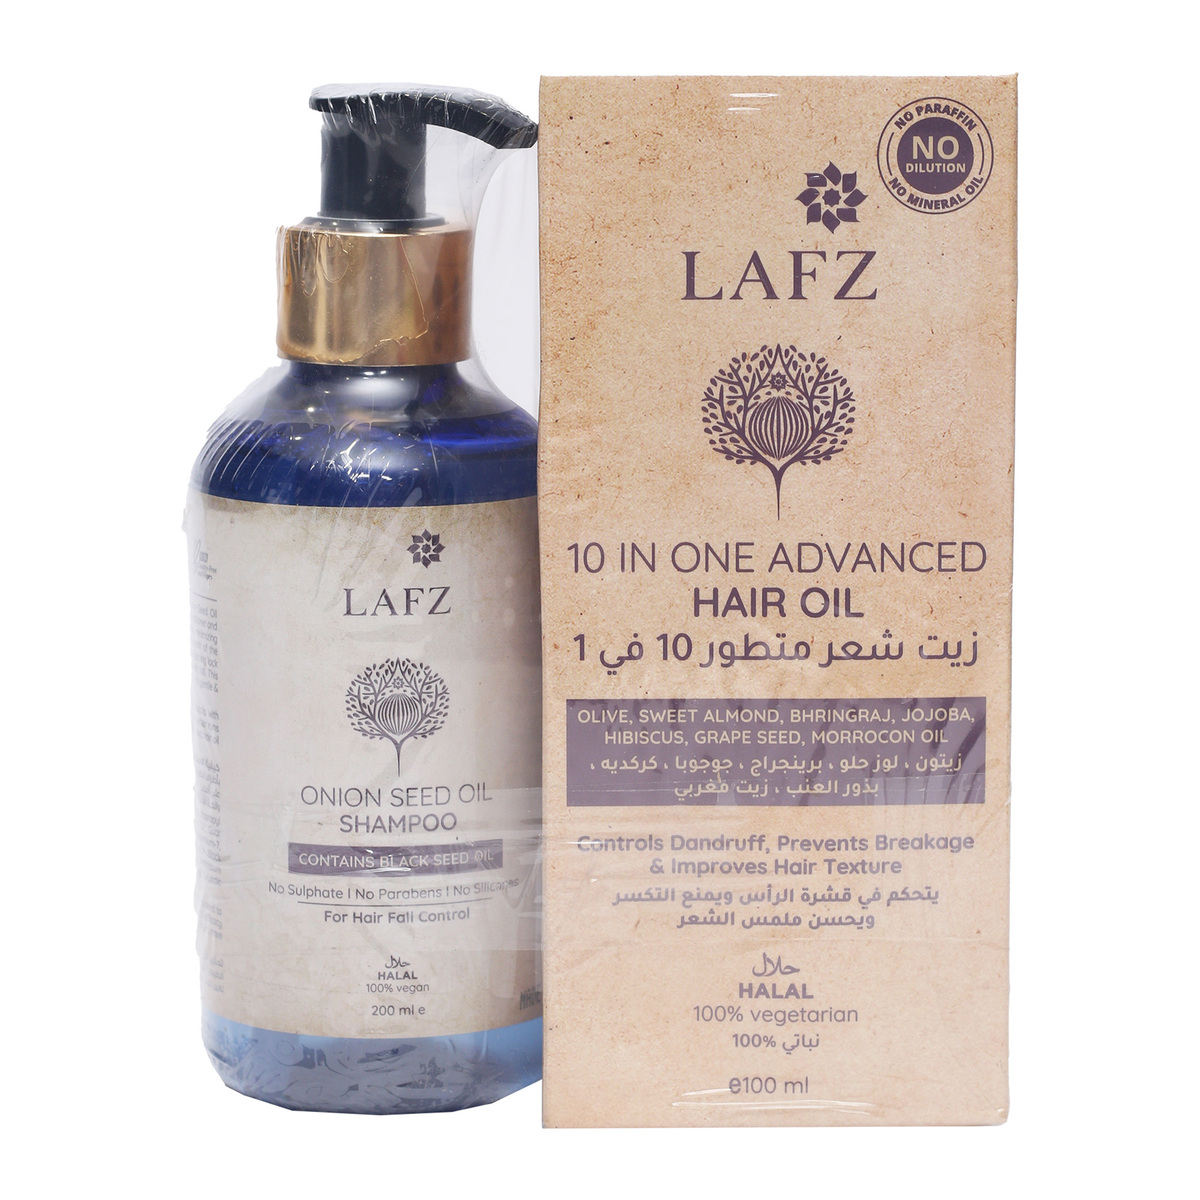 Lafz 10in1 Advanced Hair Oil 100 ml + Onion Seed Oil Shampoo 200 ml